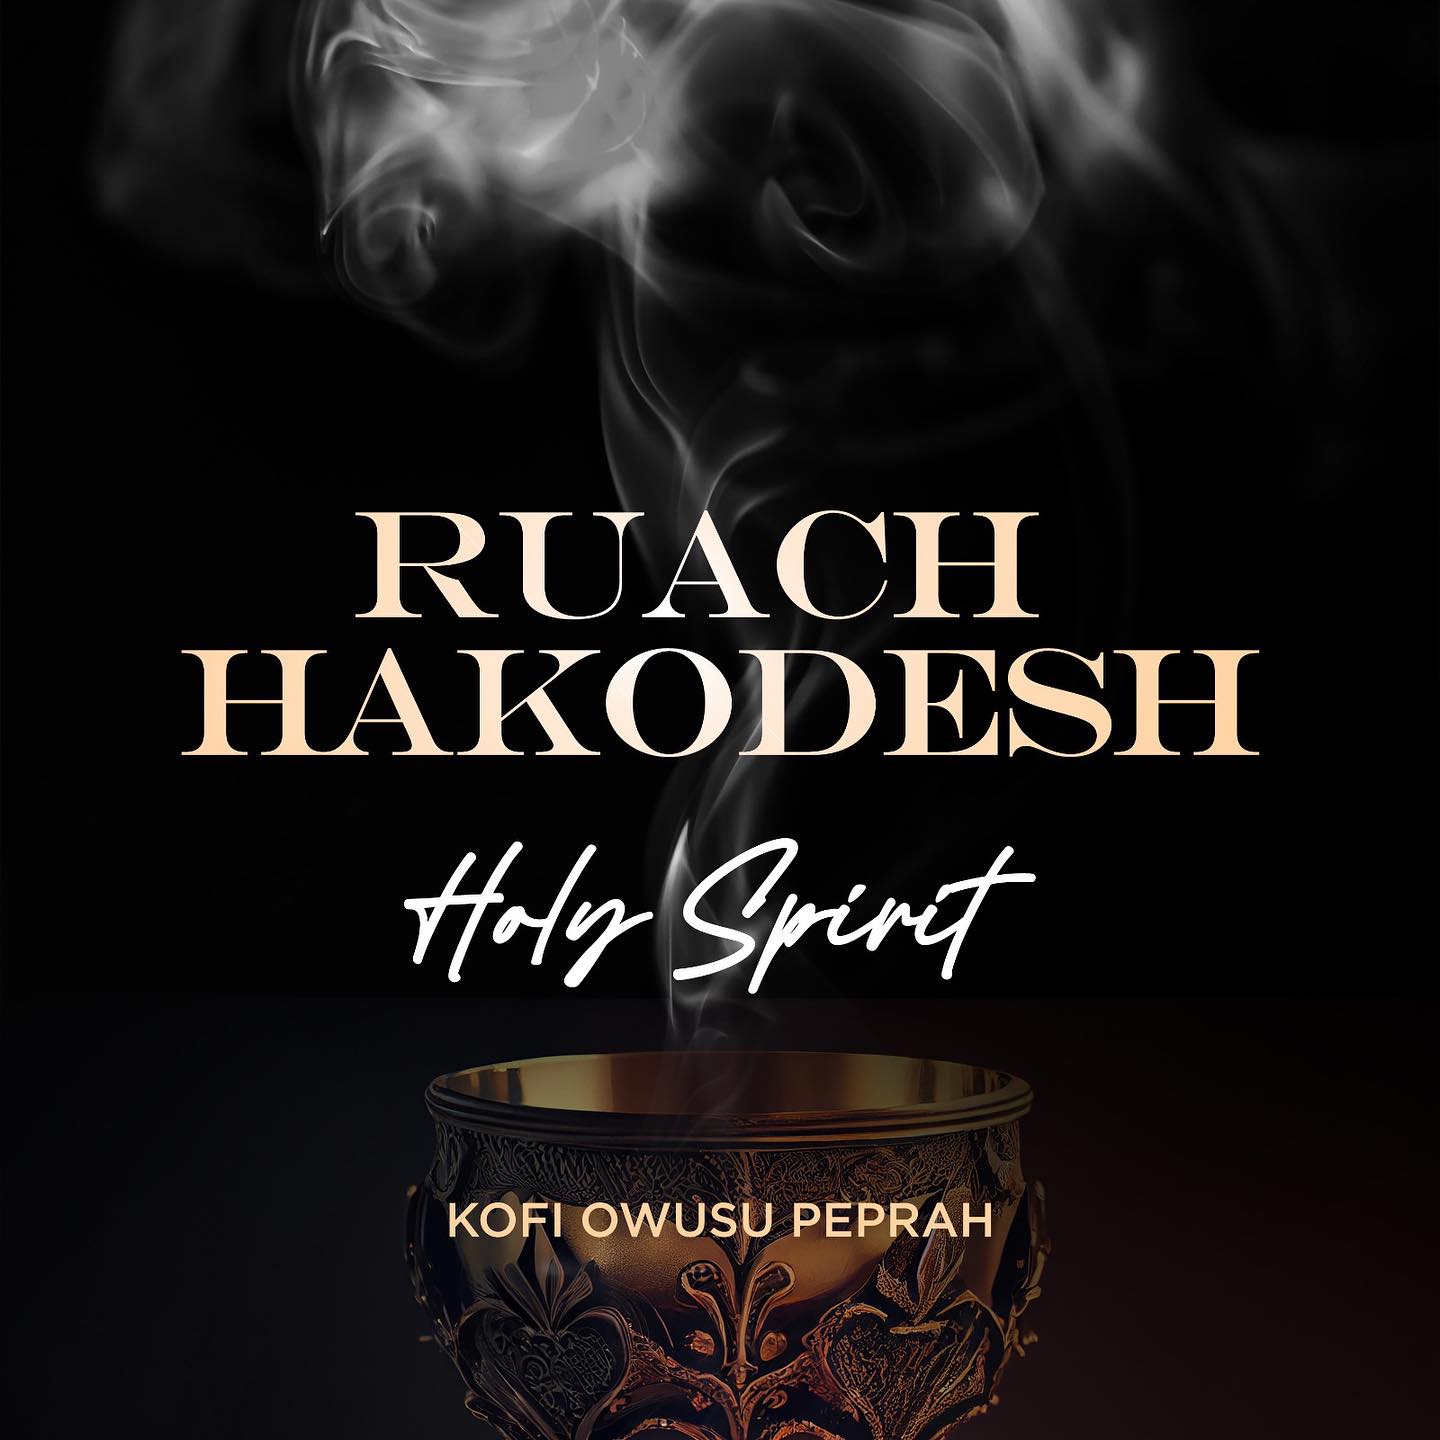 Ruach Hakodesh (The Holy Spirit)